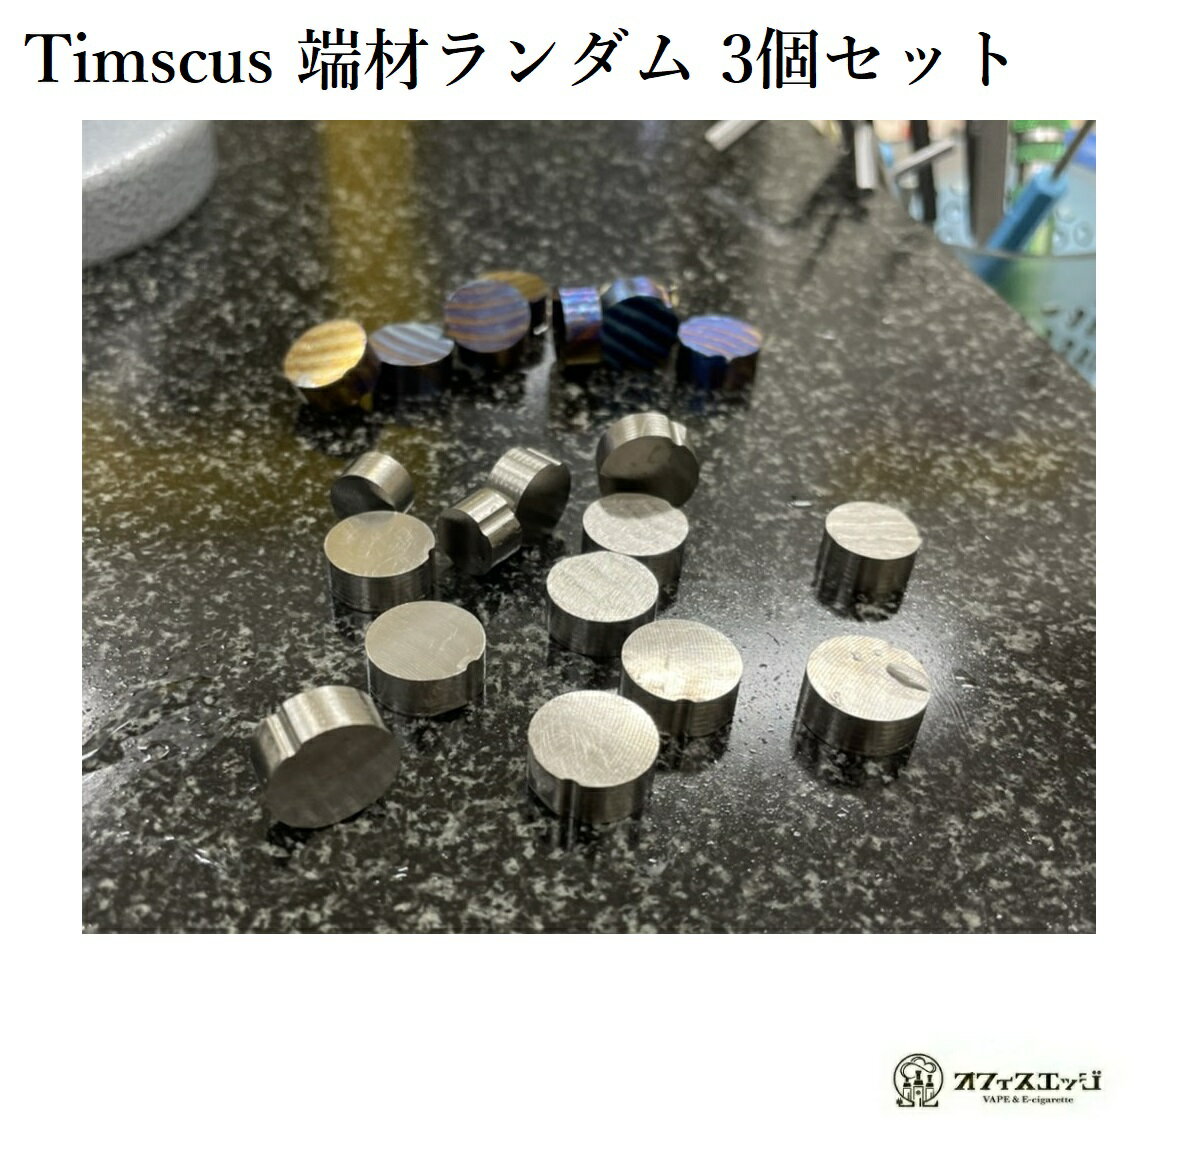 SP timascus ティマスカス 端材 3個セット DIY vape 素材 アクセサリー 等に 